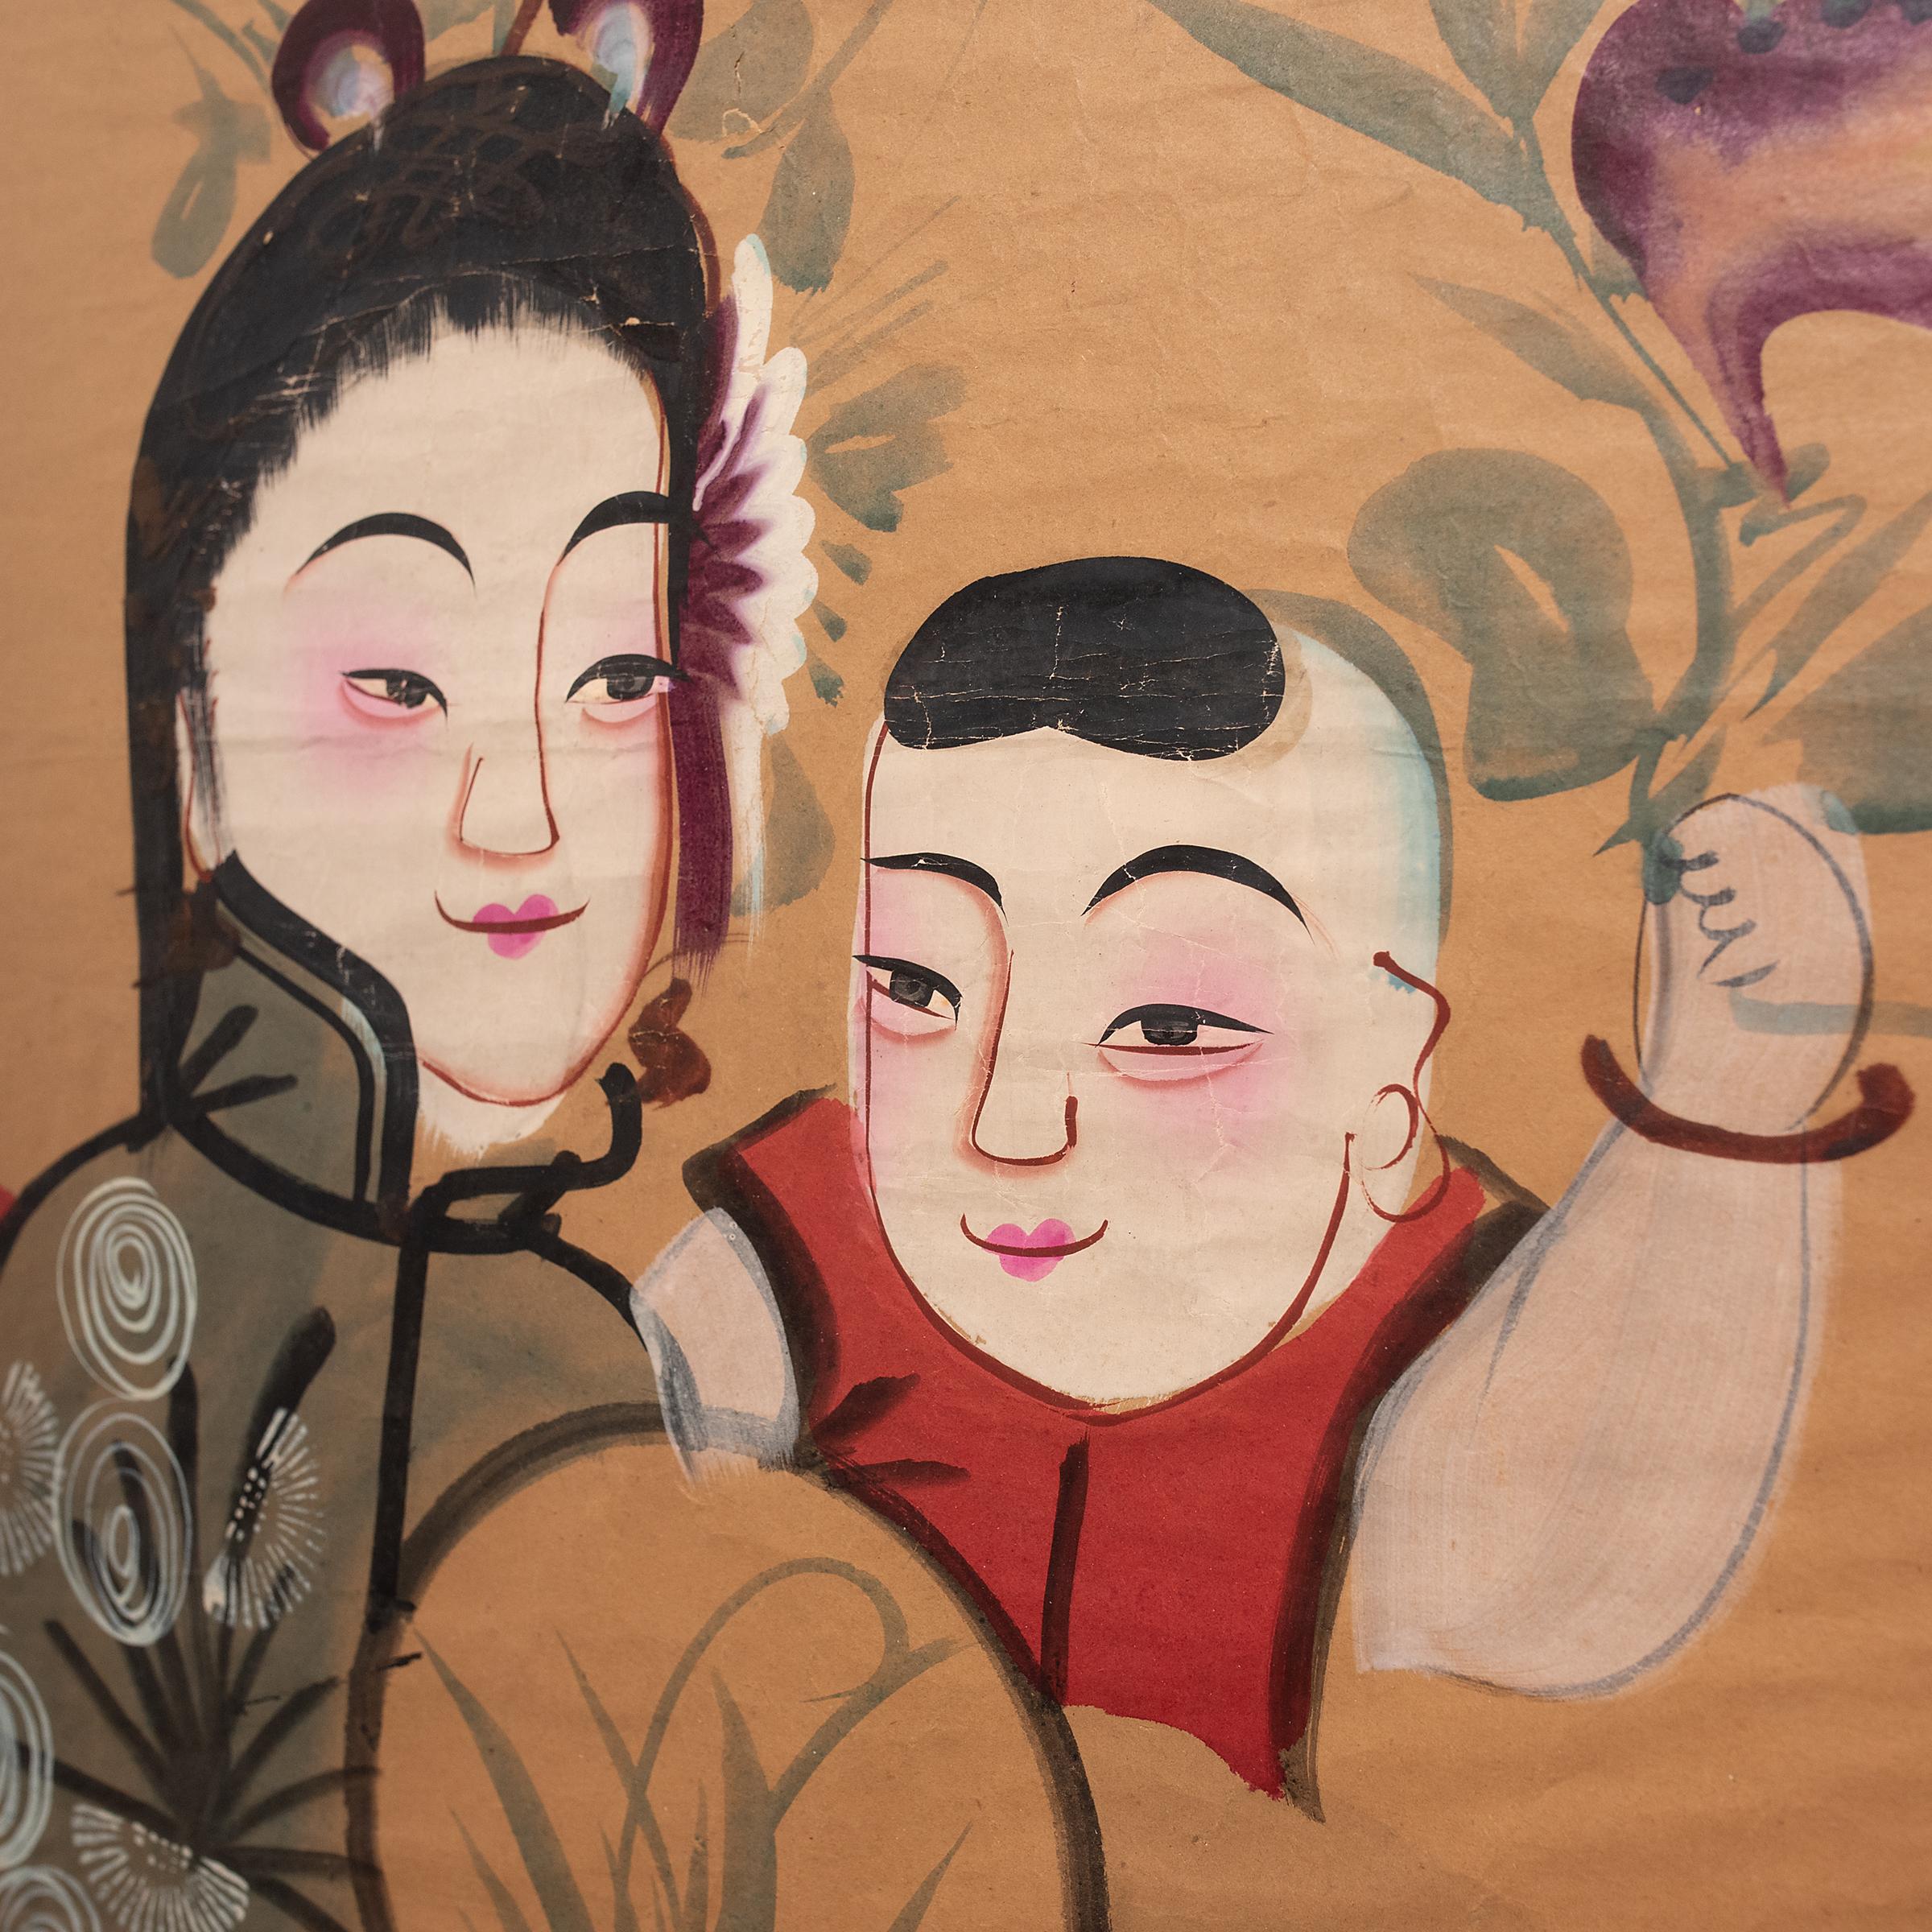 Les peintures du Nouvel An chinois (nian hua) sont des peintures folkloriques colorées créées pour célébrer la fête annuelle du printemps. Dessinées ou imprimées par des artistes populaires dans des studios régionaux, les peintures nian hua